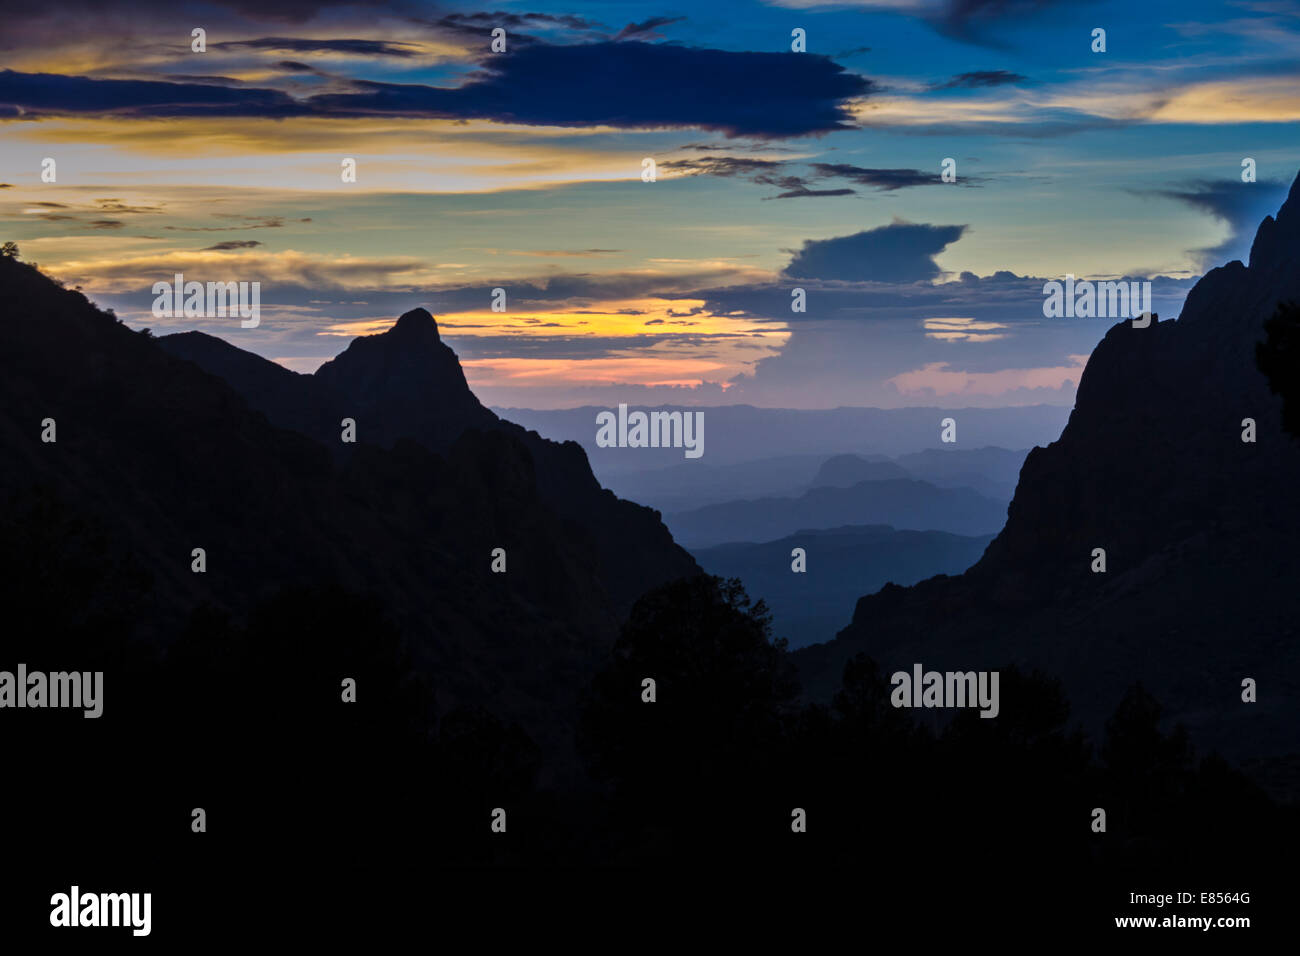 La finestra, un iconico in vista delle montagne di Chisos, stagliano al tramonto nel Parco nazionale di Big Bend. Foto Stock